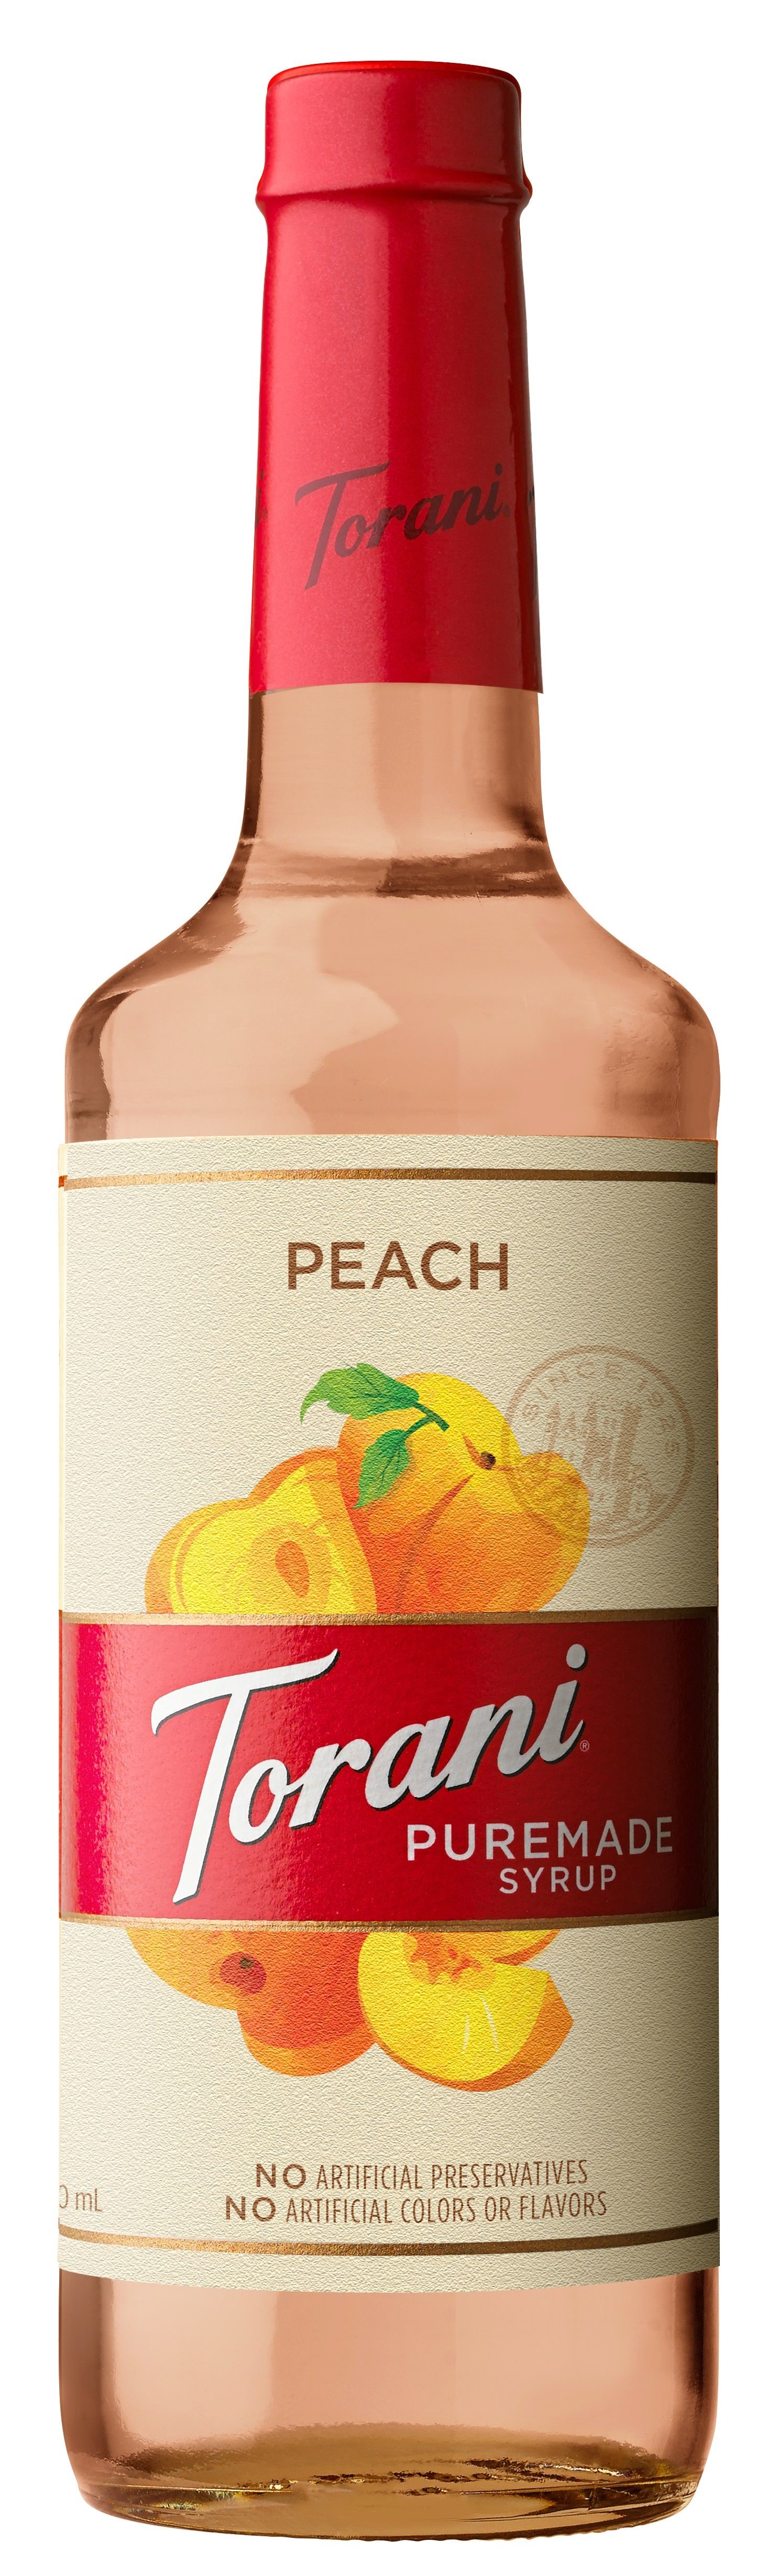 Torani - Puremade Syrup Peach